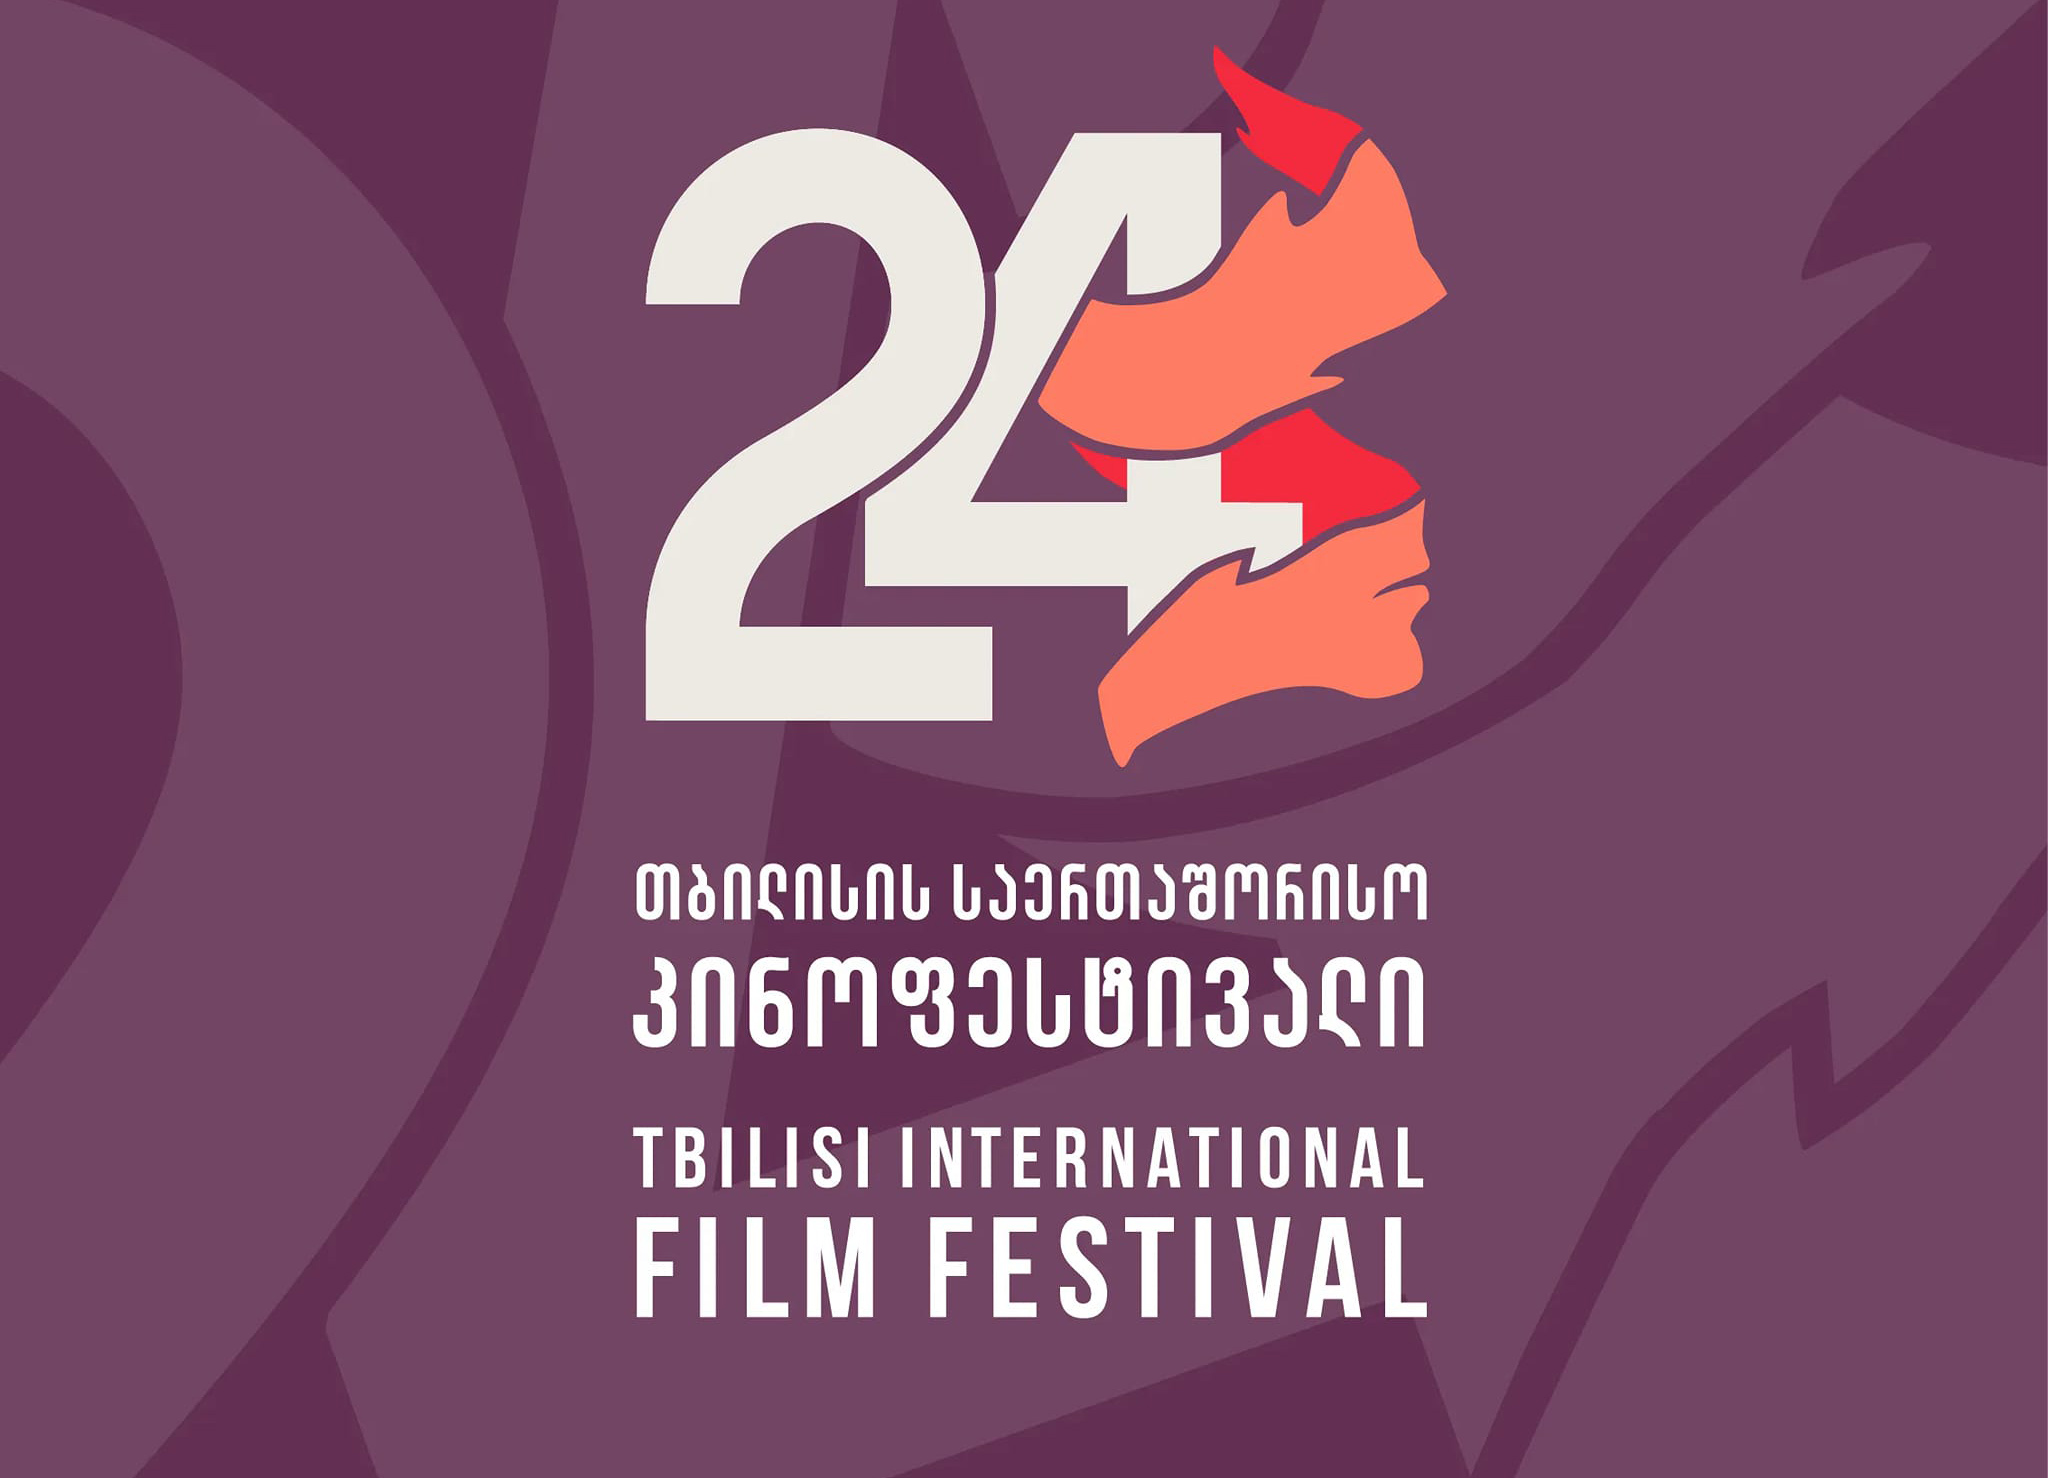  Հայկական ֆիլմերի հատուկ ցուցադրություն՝ Թբիլիսիի միջազգային կինոփառատոնում 